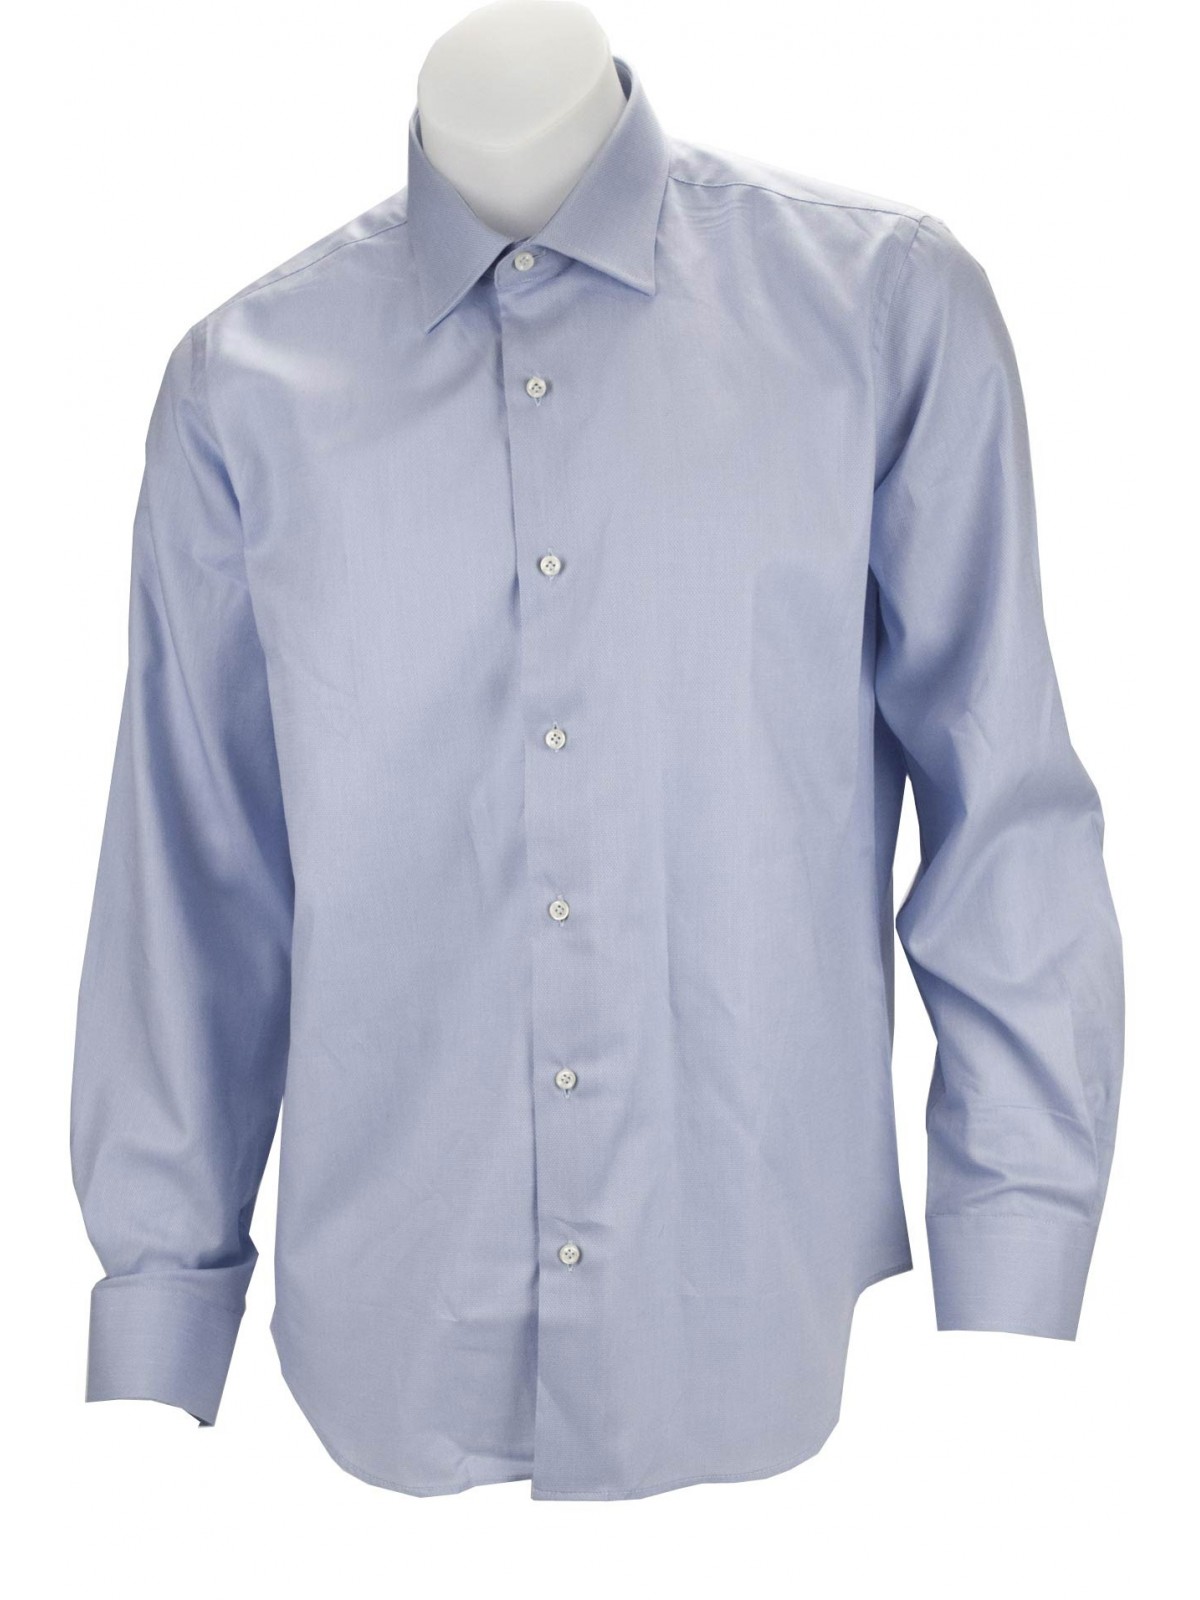 Camisa Hombre Elegante Tejido Azul Claro Sin Bolsillo - Philo Vance - Conero